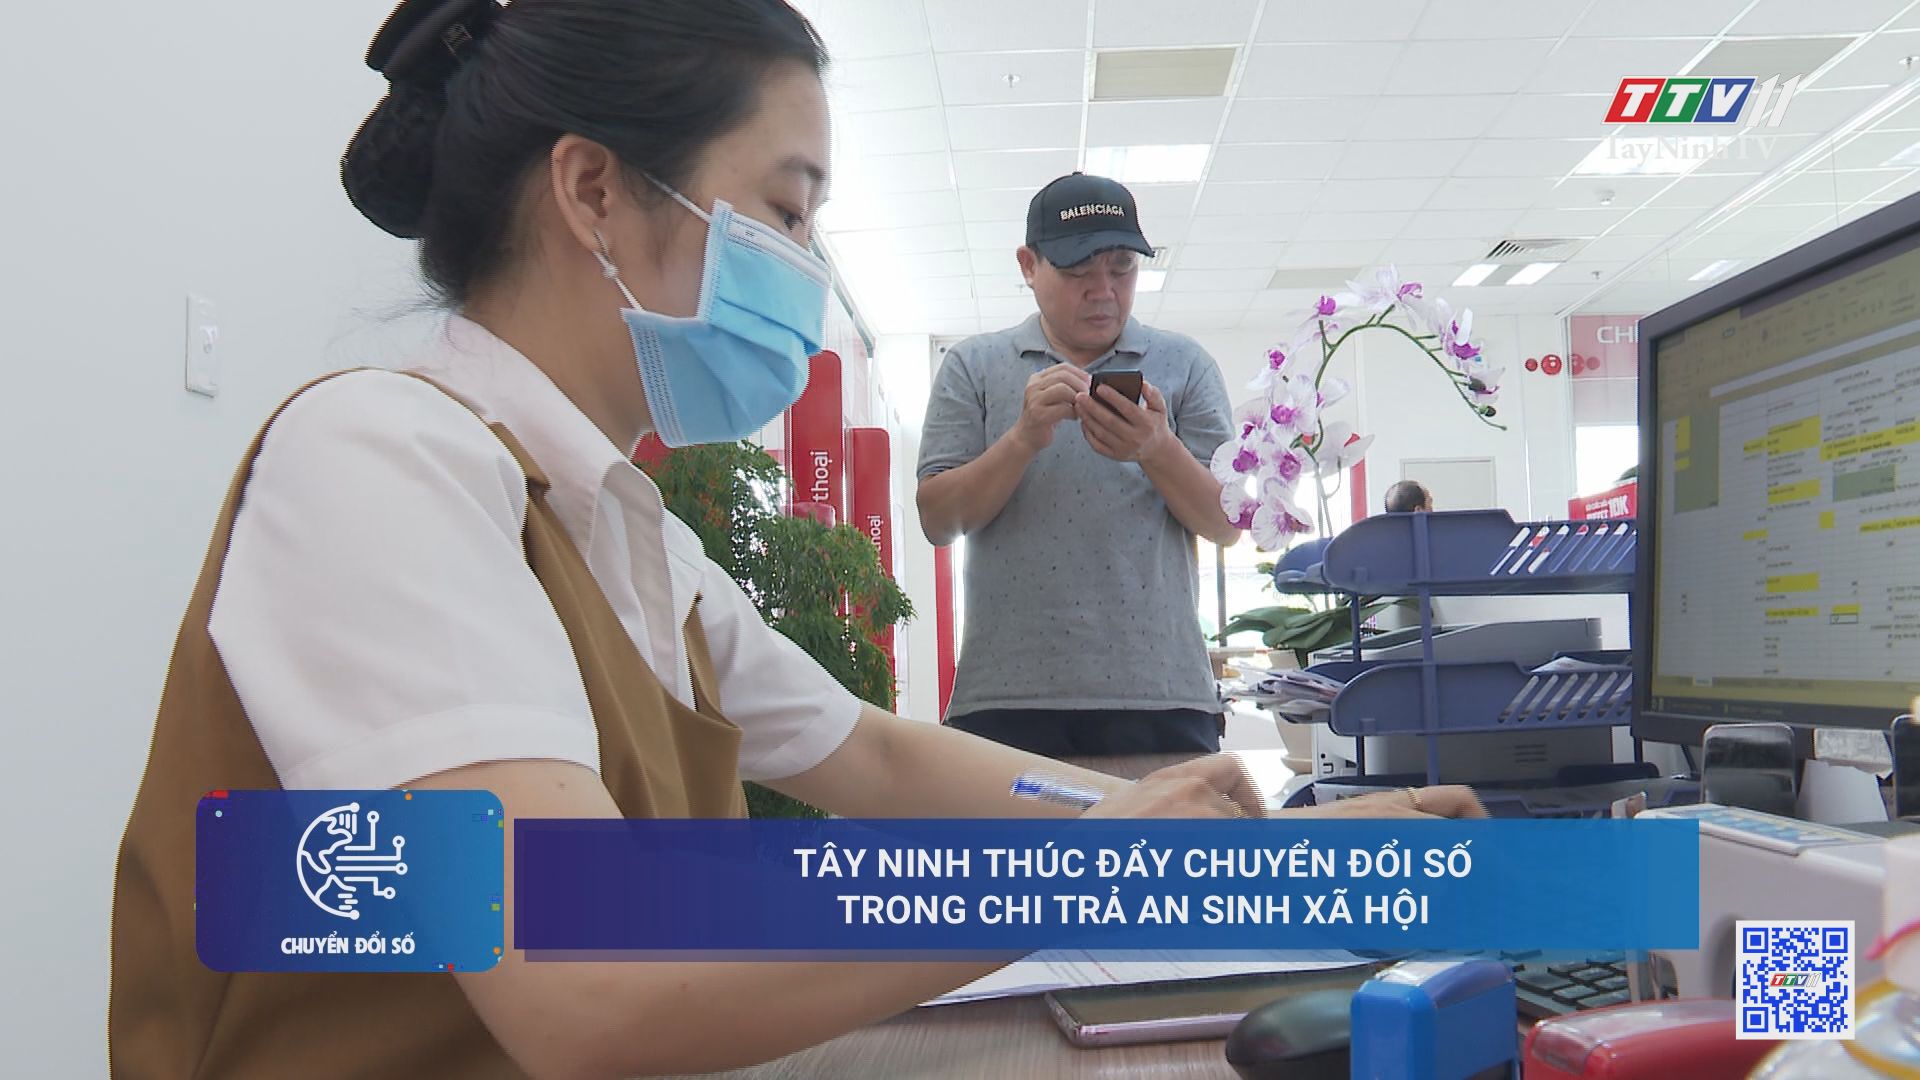 Tây Ninh thúc đẩy chuyển đổi số trong chi trả an sinh xã hội | CHUYỂN ĐỔI SỐ | TayNinhTV